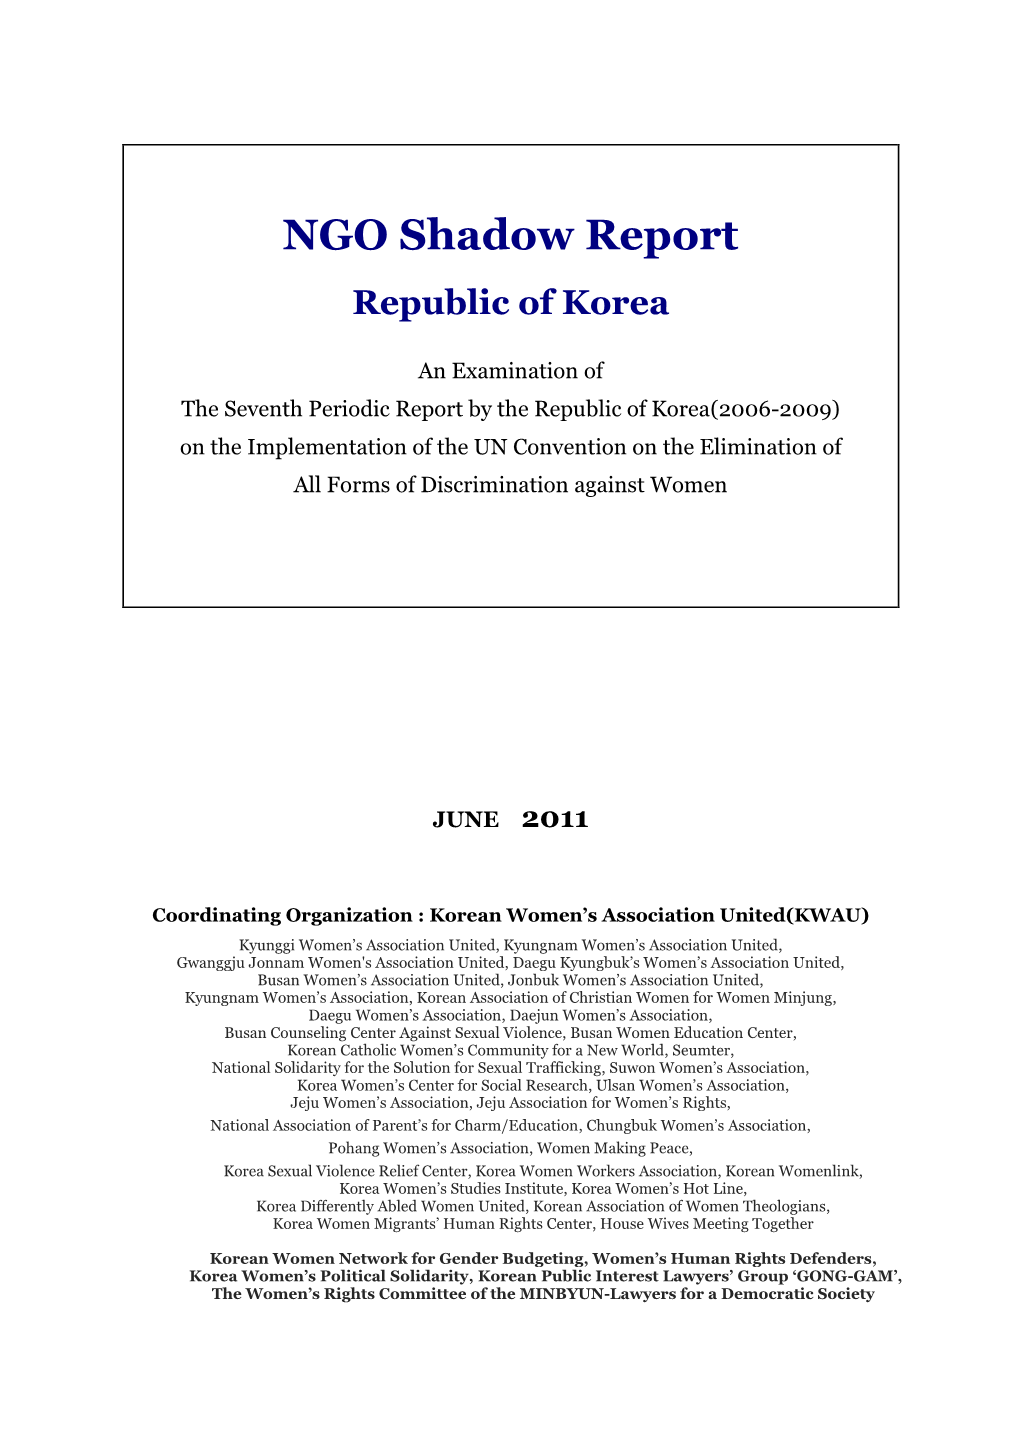 NGO Shadow Report Republic of Korea